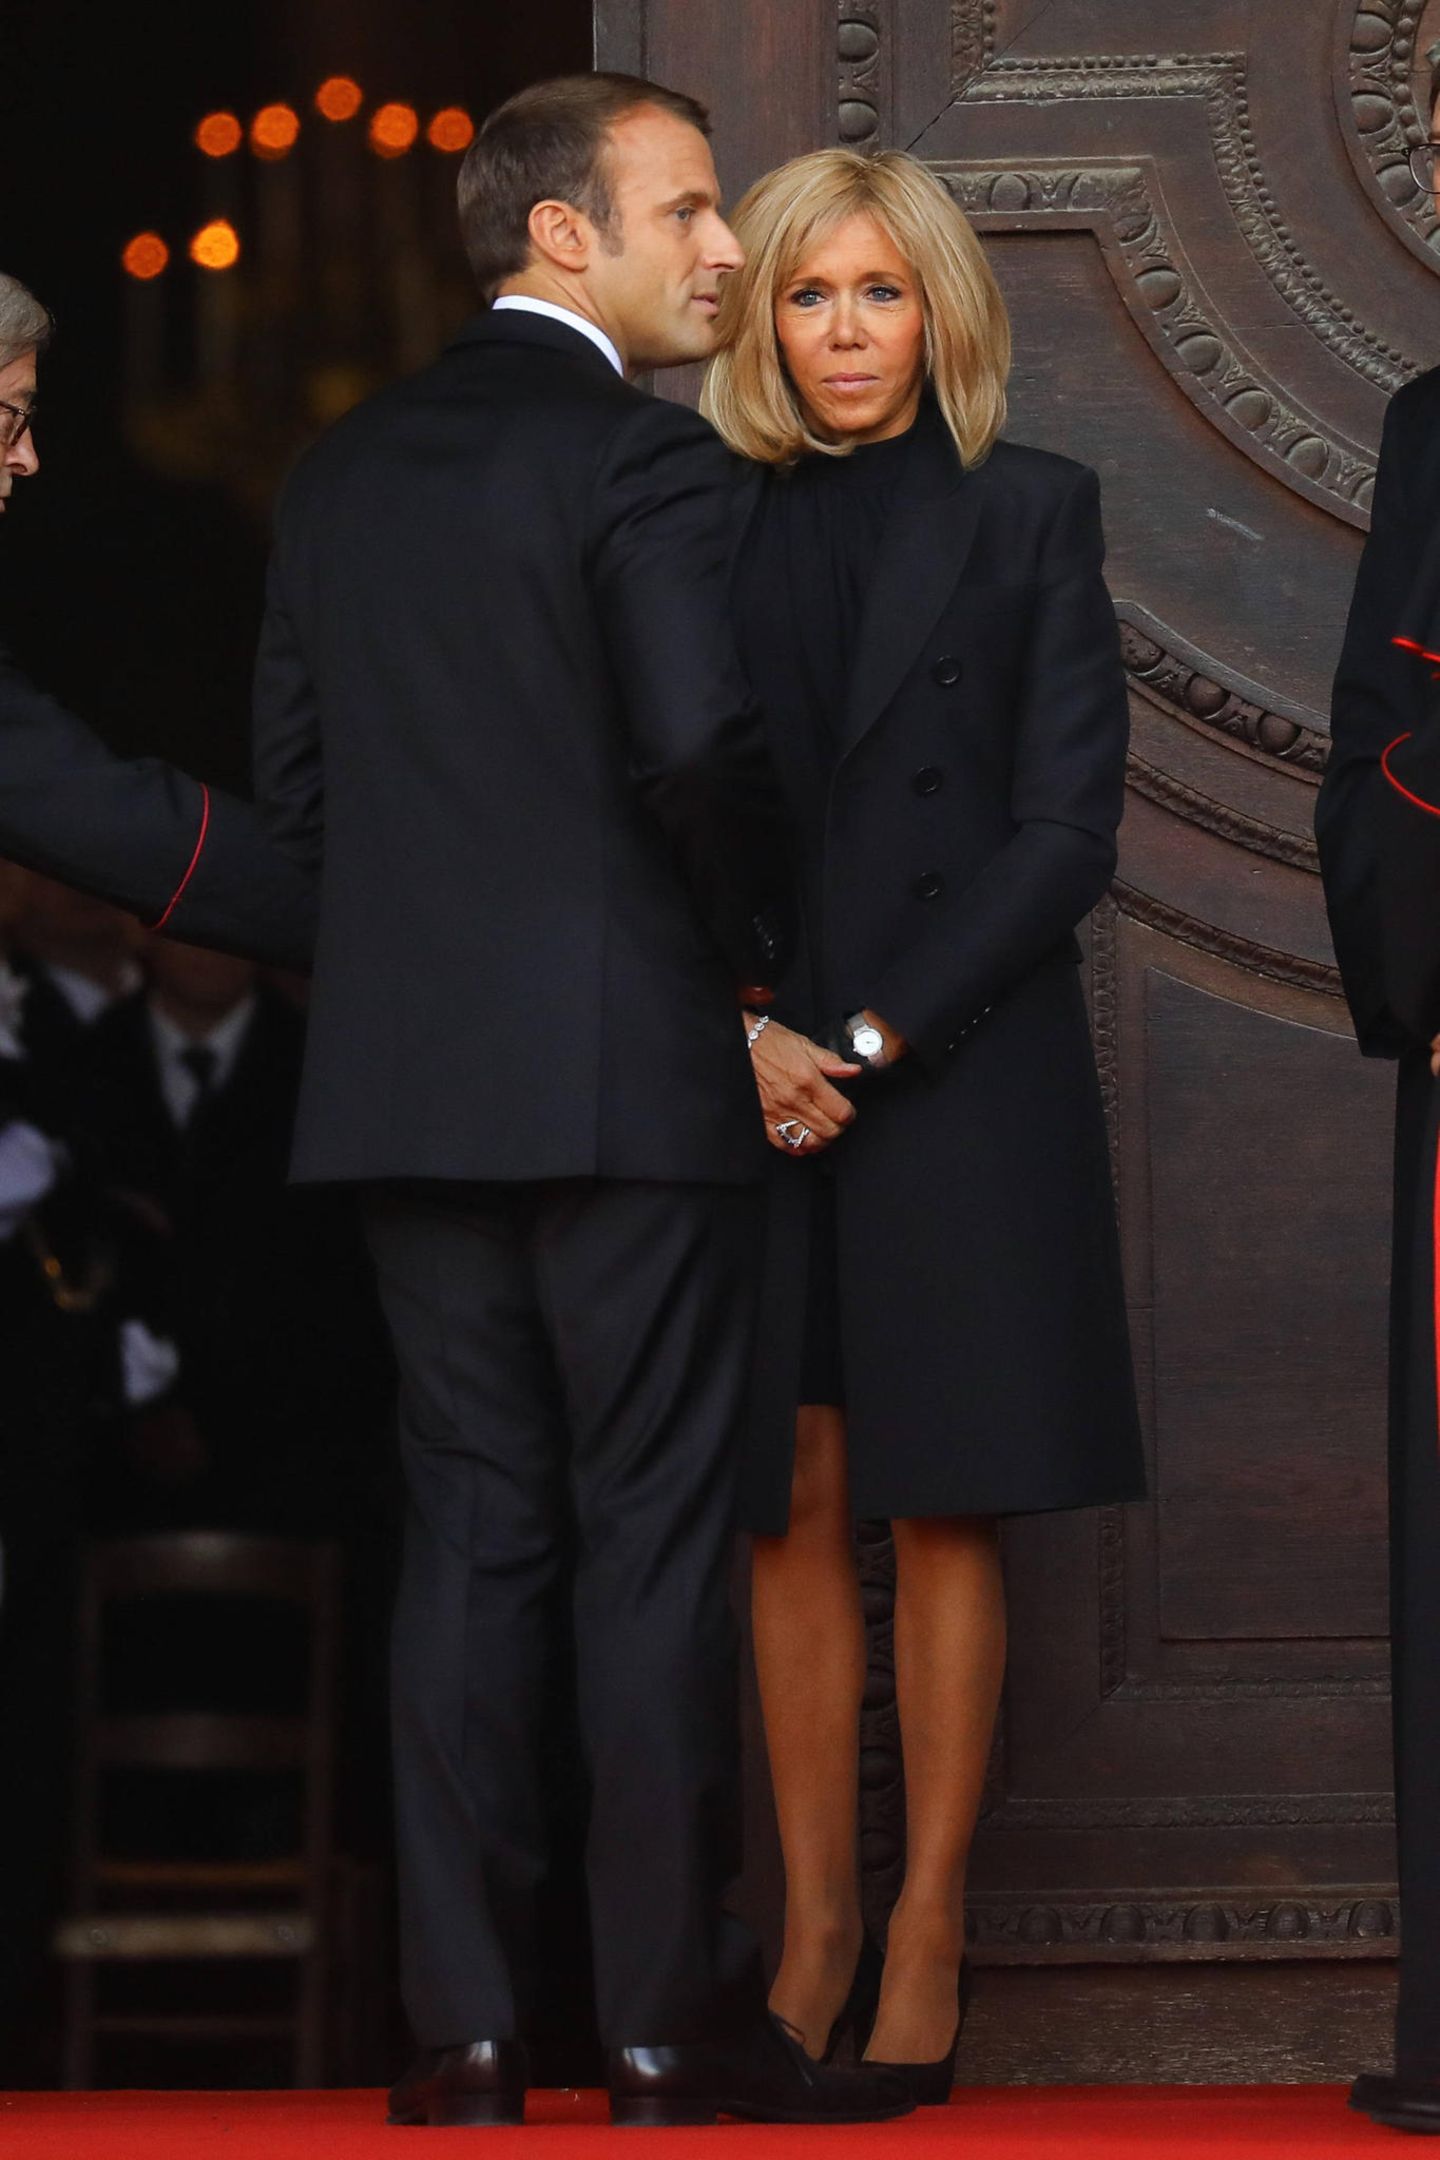 Selbstverständlich nimmt auch Frankreichs amtierender Präsident Emmanuel Macron mit seiner Frau Brigitte Macron am Trauergottesdienst für seinen verstorbenen Vorgänger teil.